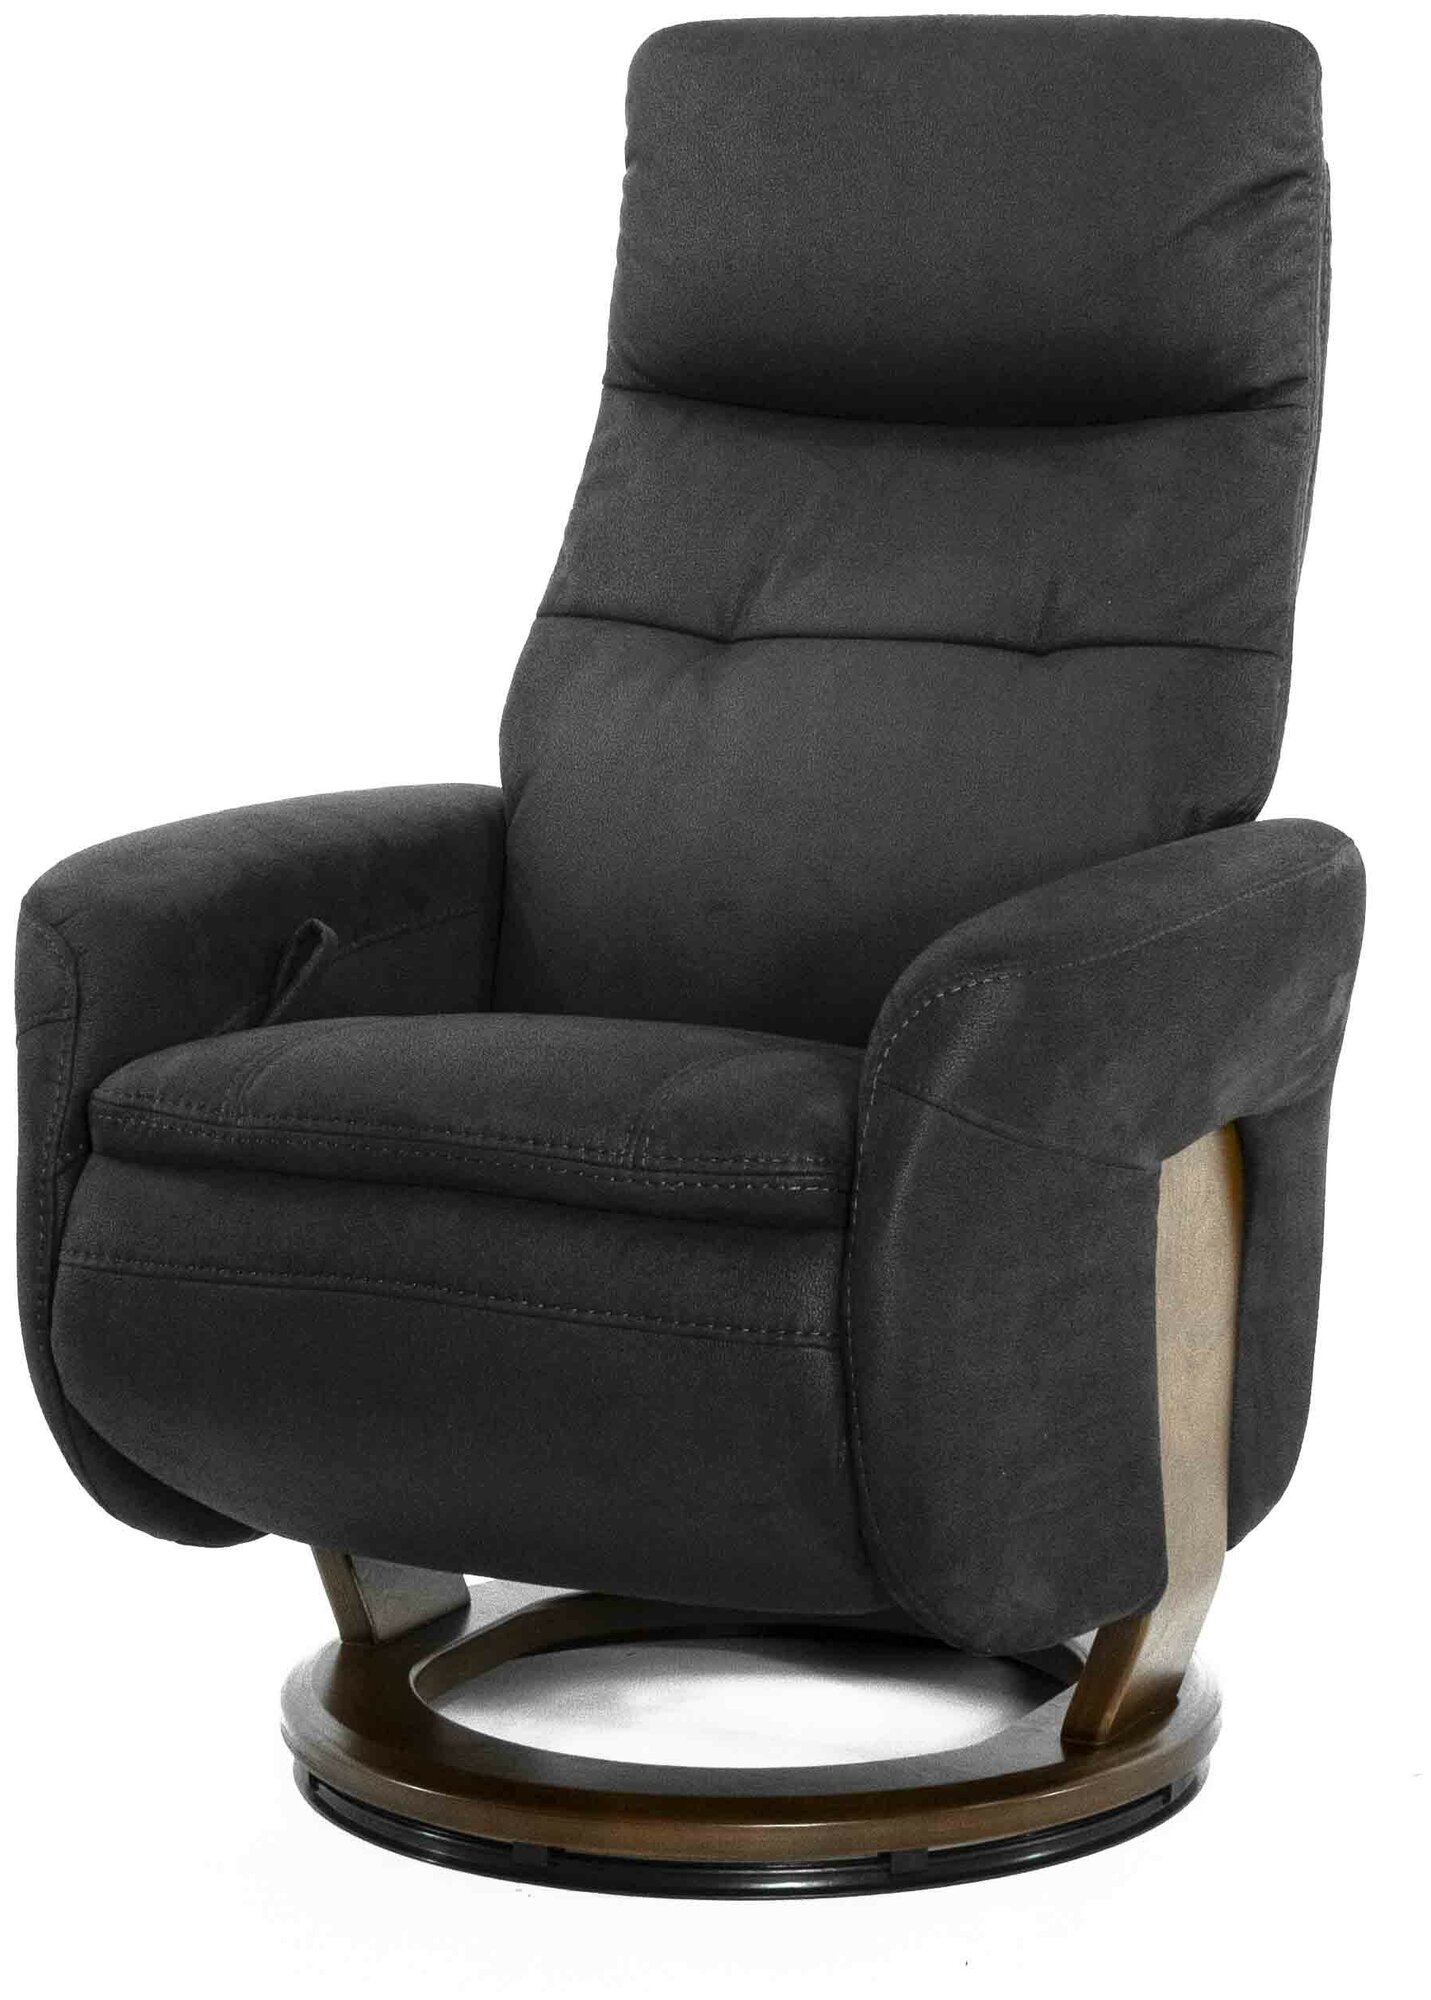 Кресло реклайнер Falto Кресло-реклайнер Relax Francesca нубук, цвет- черно-серый